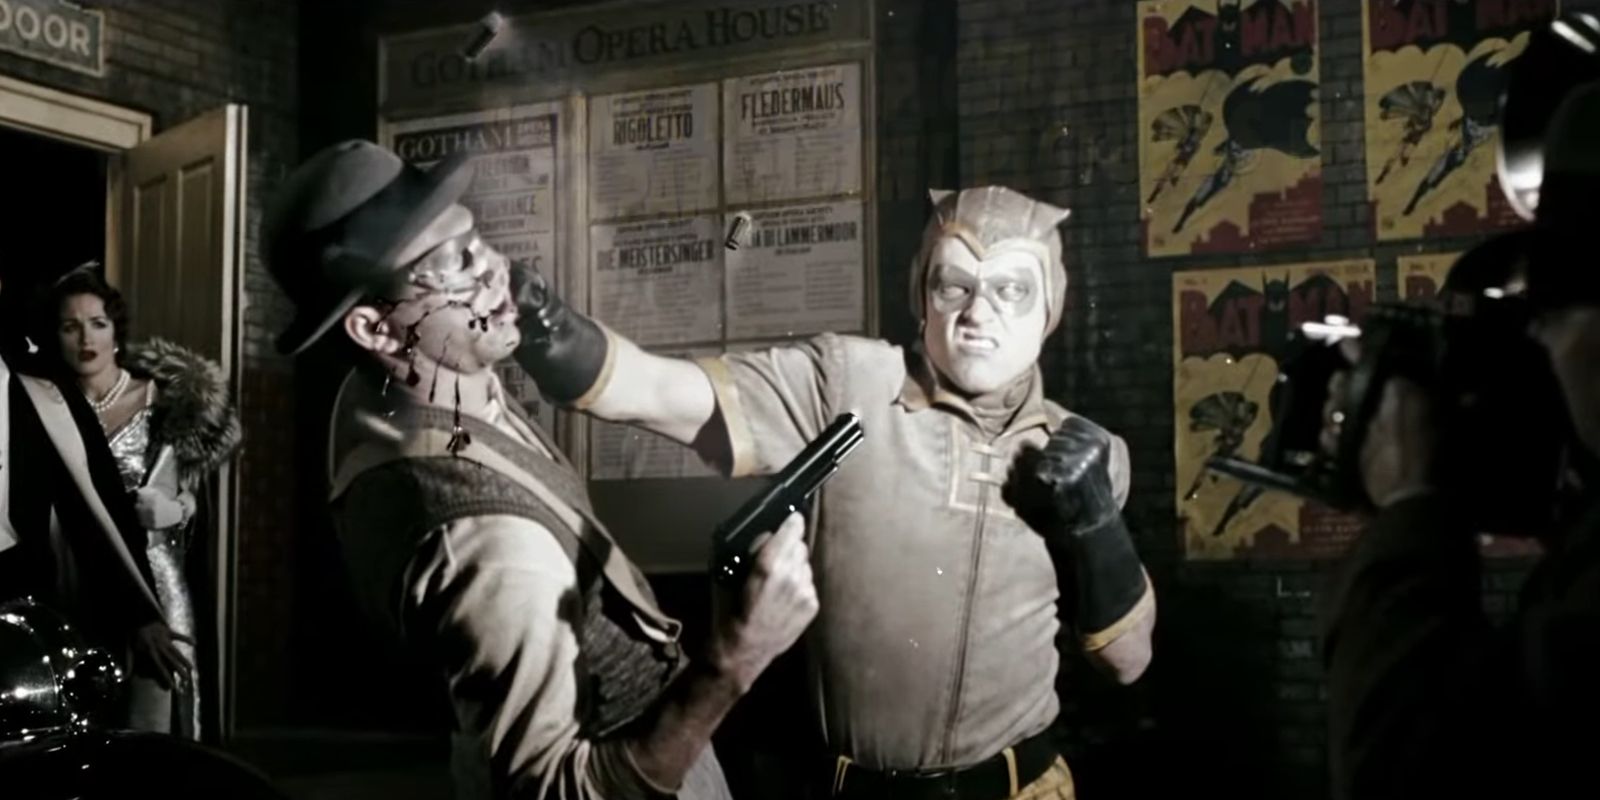 Hollis Mason as Nite Owl punching a criminal in Watchmen 2009